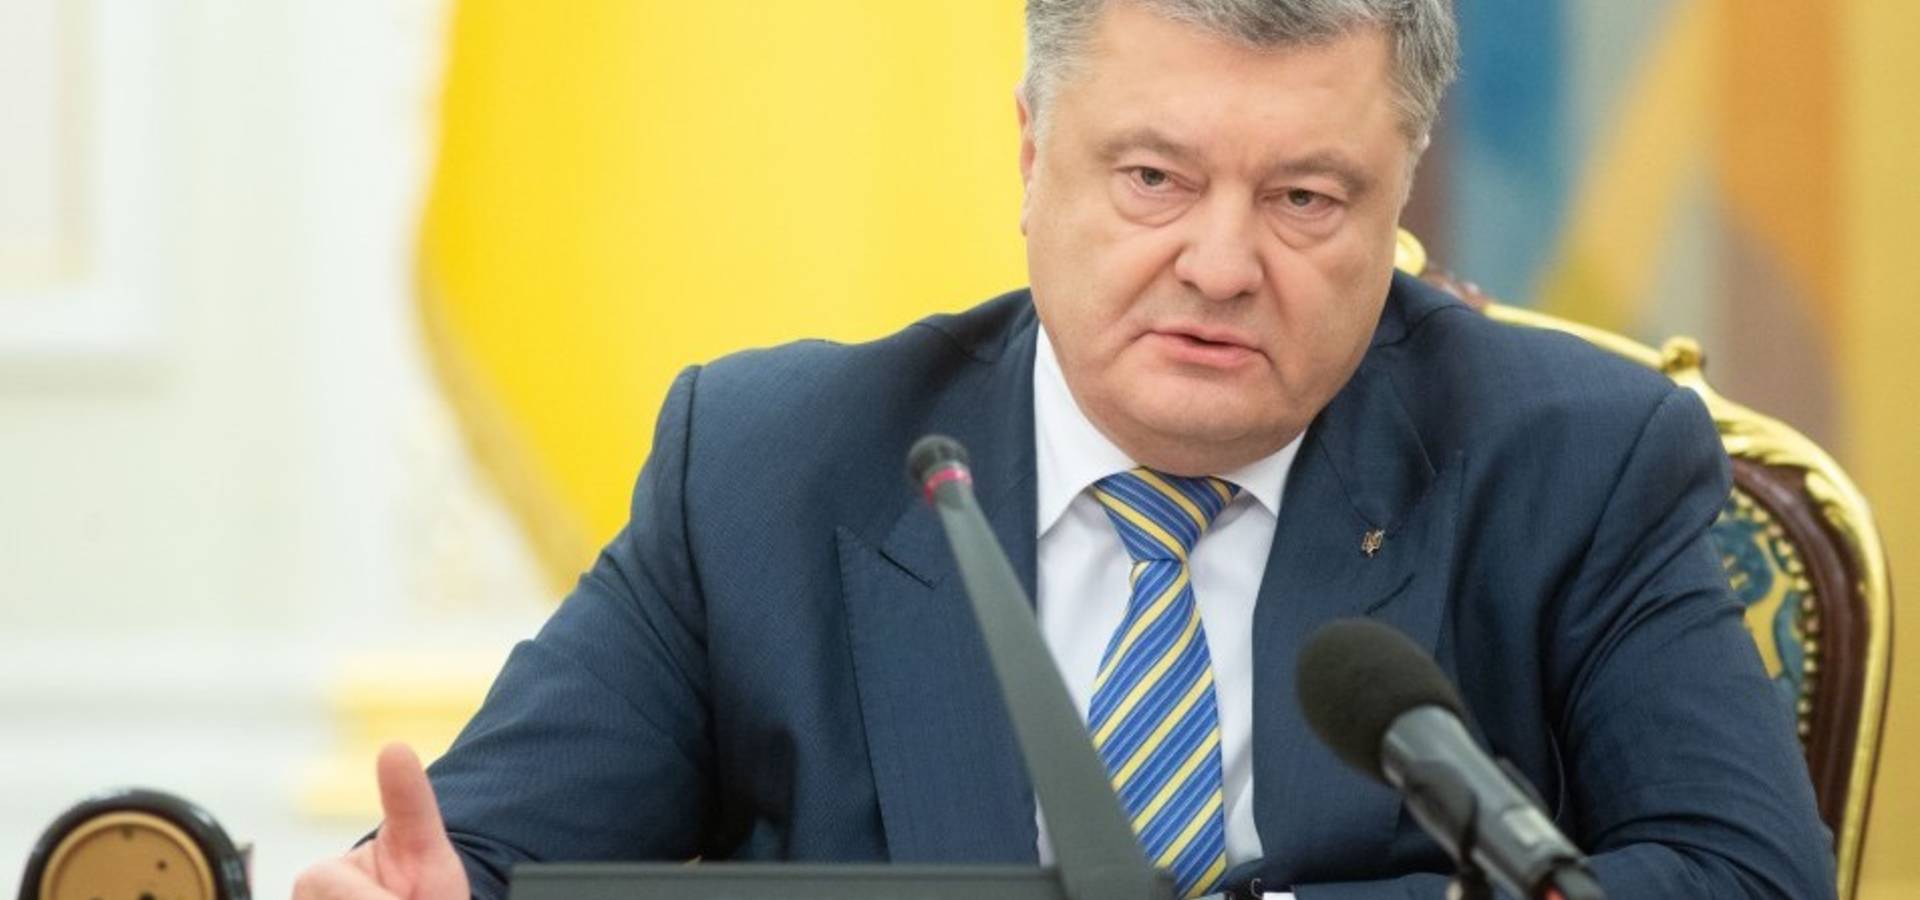 Президент вимагає від керівництва Росії негайного звільнення українських моряків та кораблів, затриманих у Керченській протоці